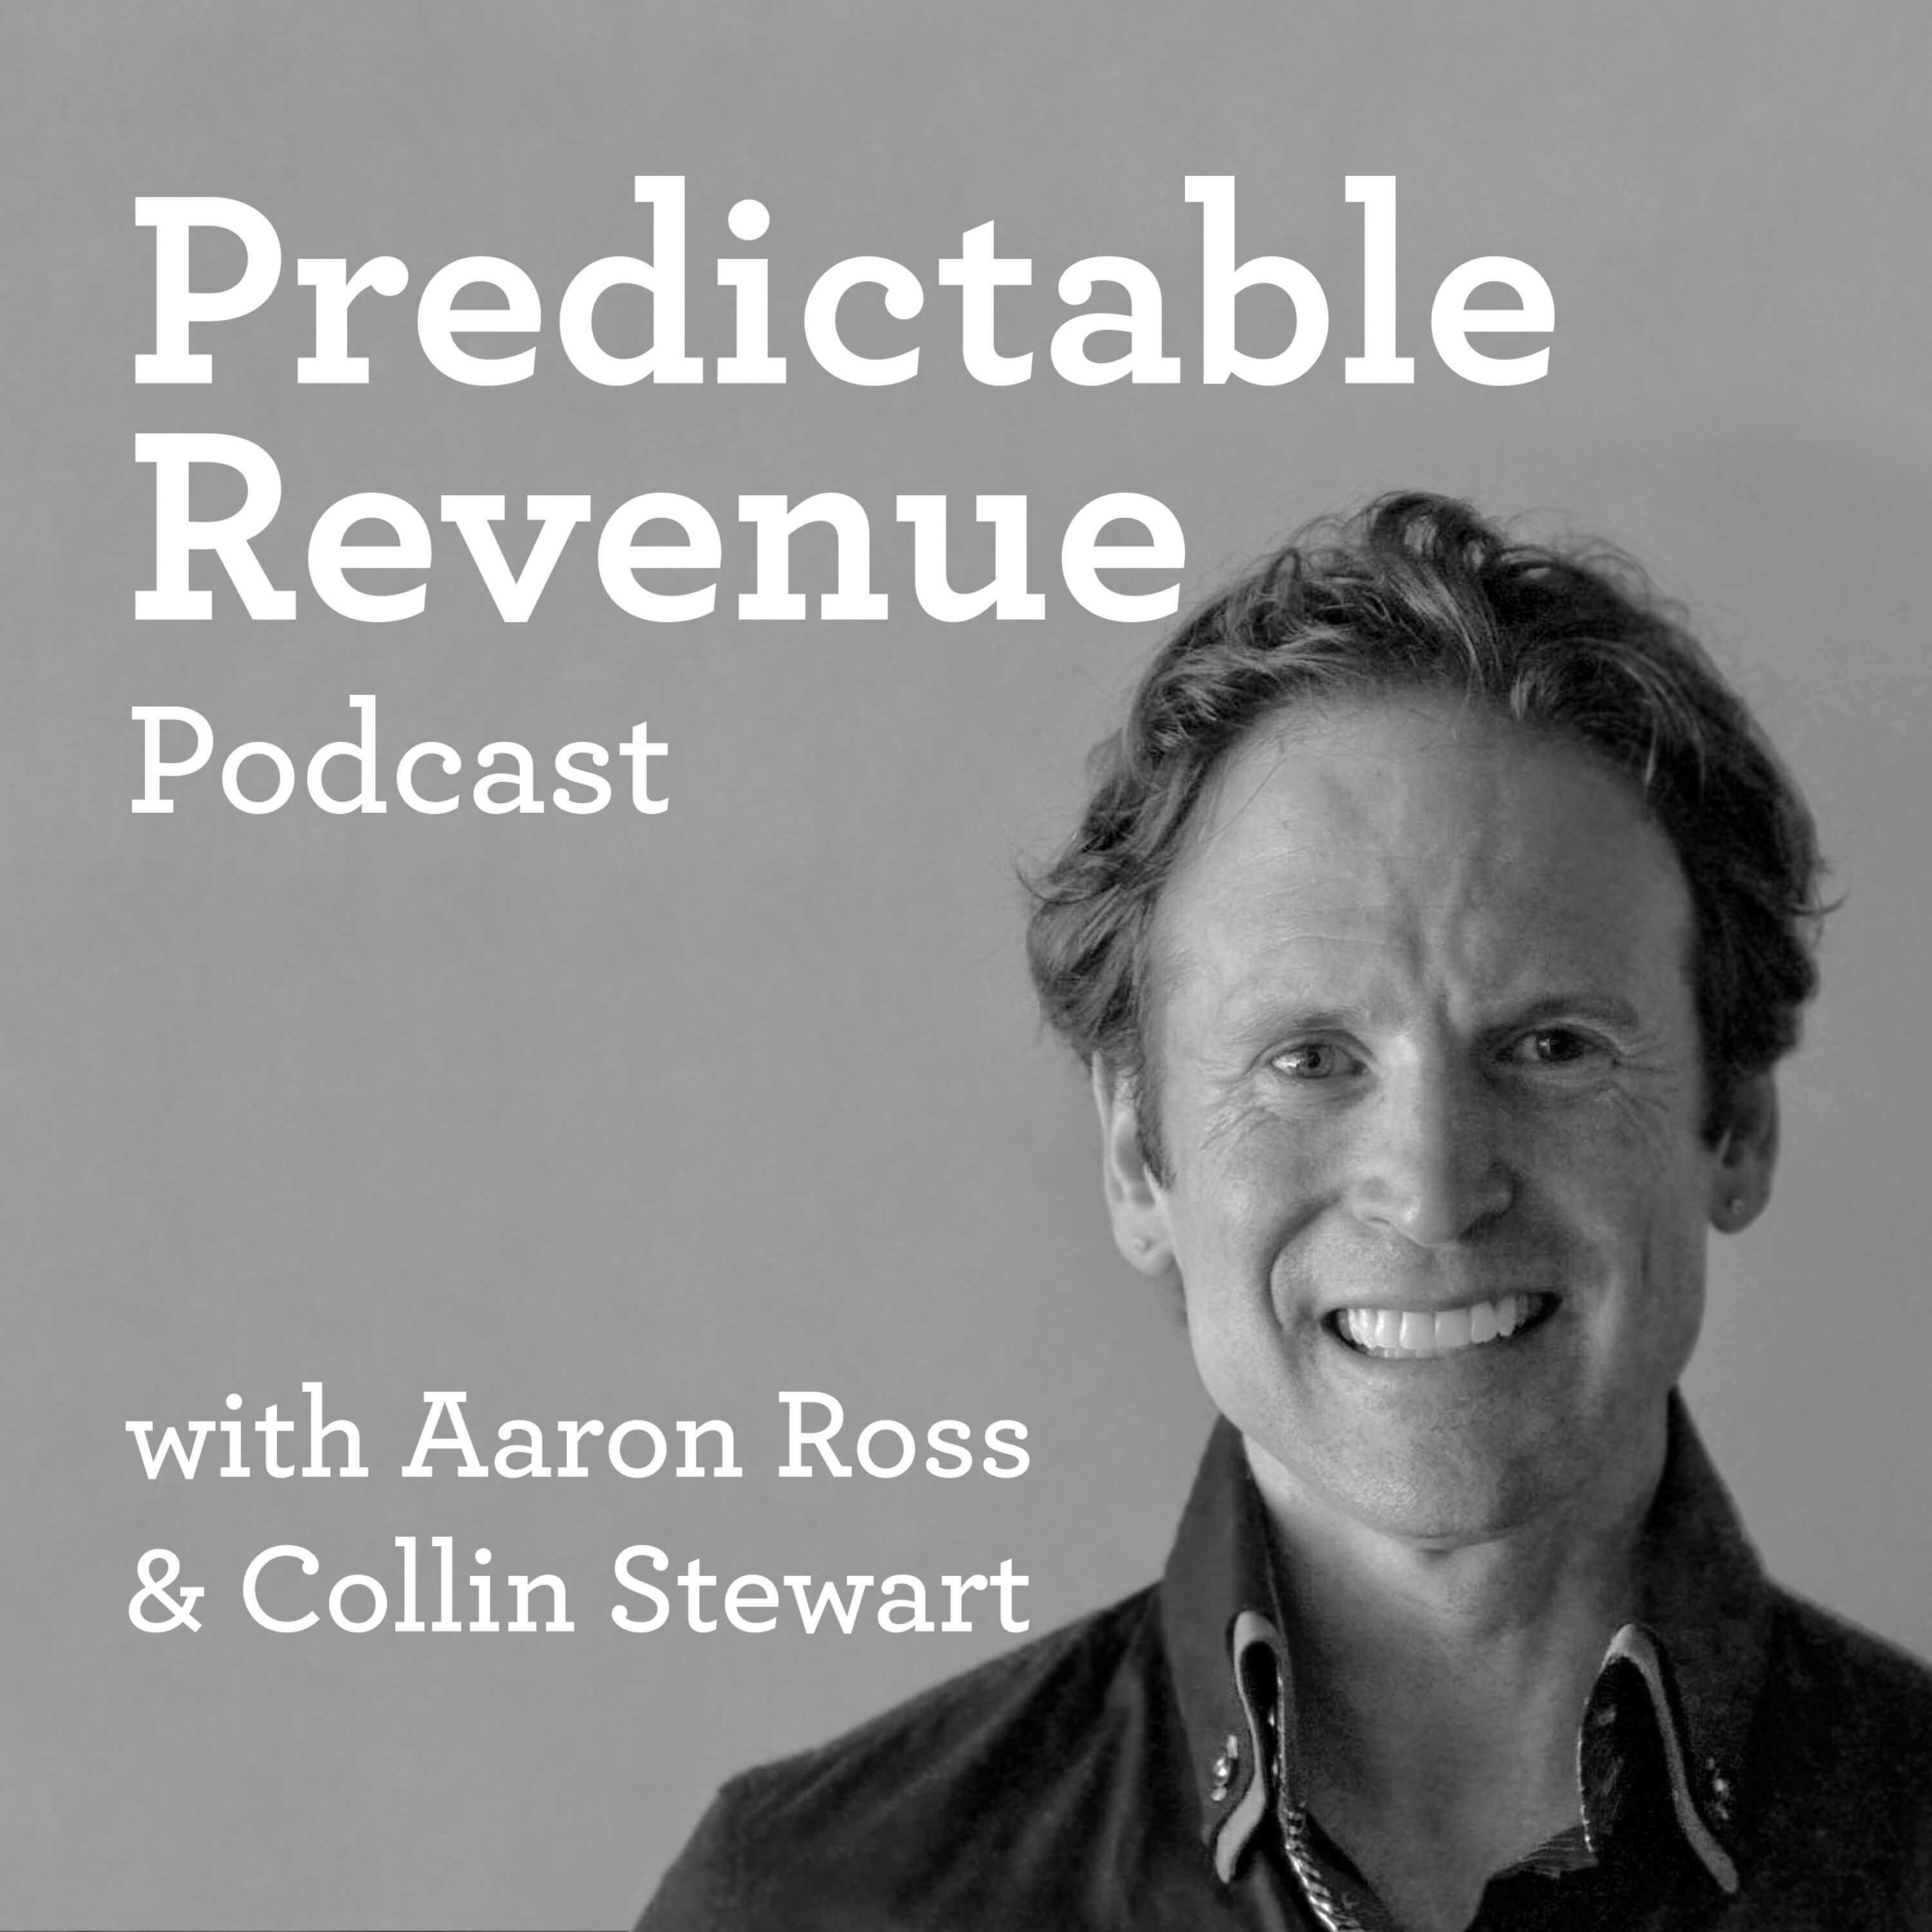 The Predictable Revenue Podcast